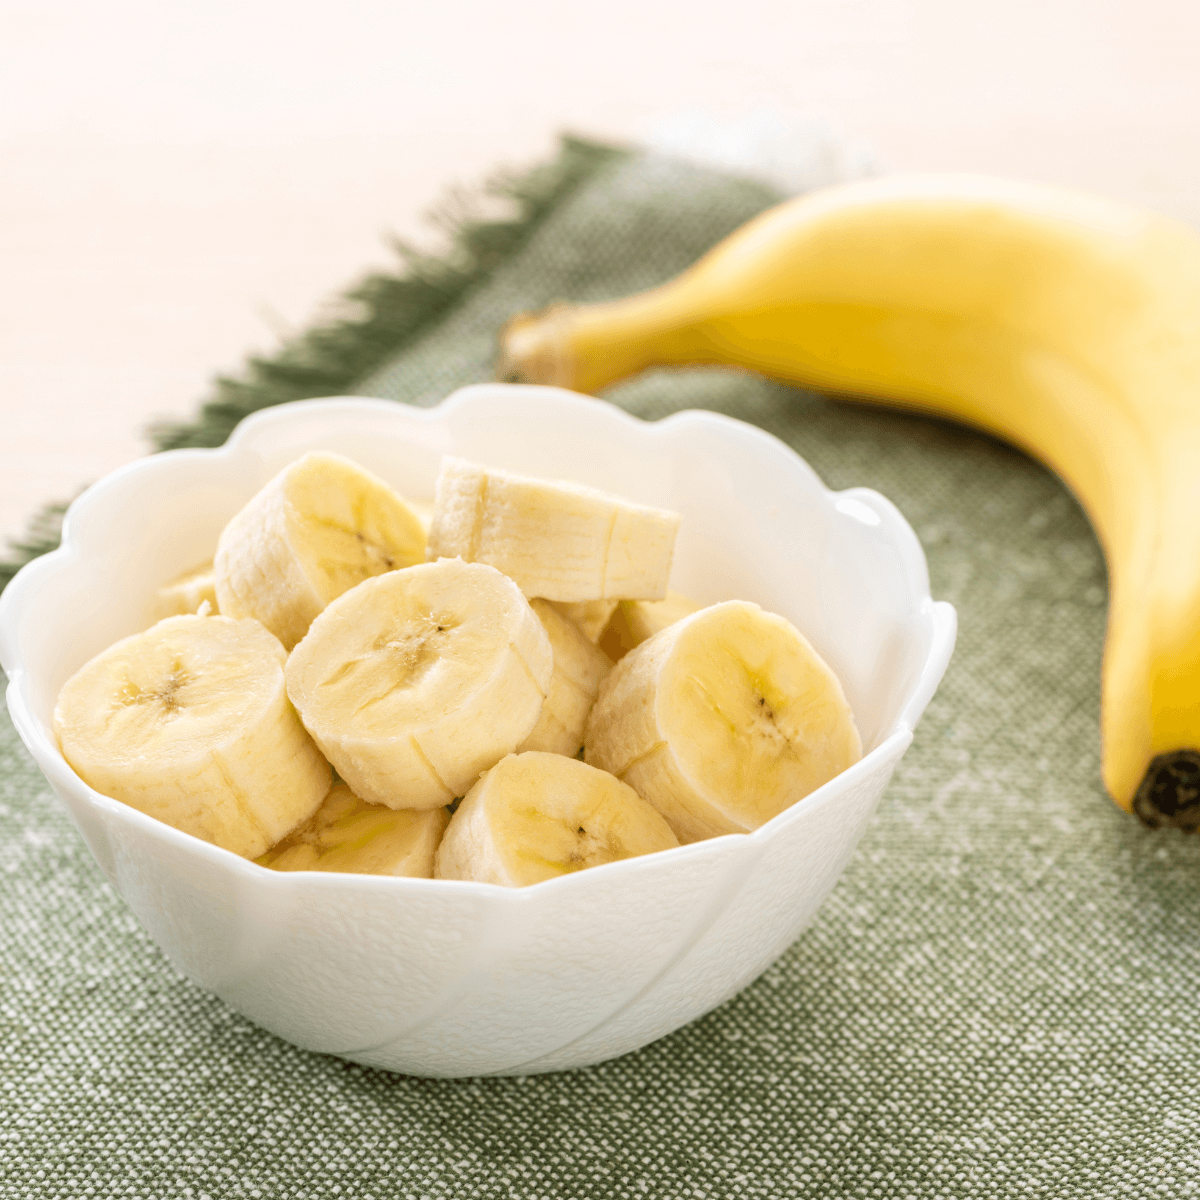 banana p&G organic foods 